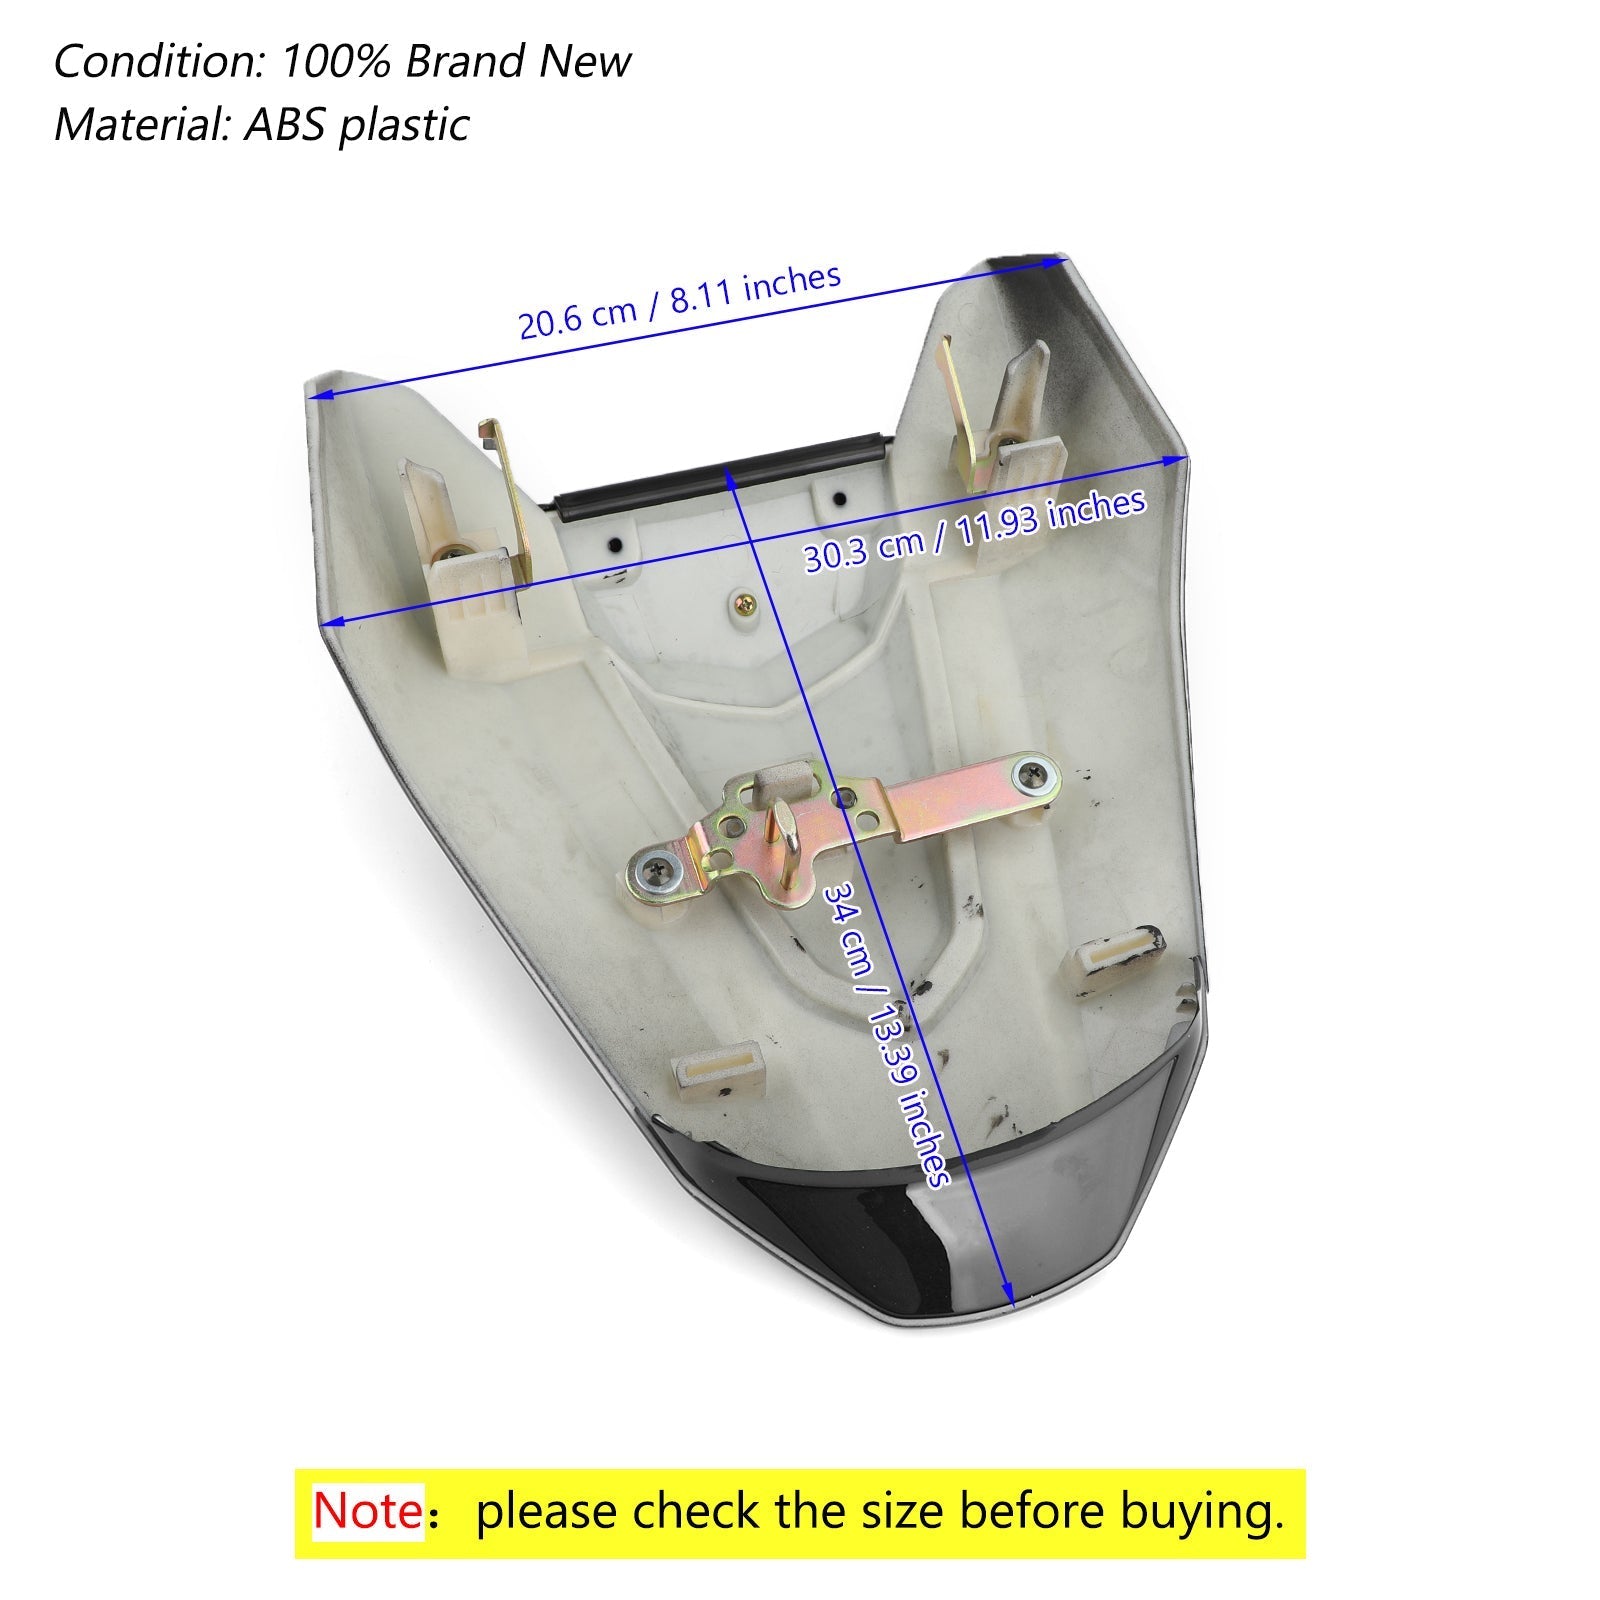 Le migliori offerte per Honda CBR650R 2019-2020 Carenatura del sedile posteriore del motociclo sono su ✓ Confronta prezzi e caratteristiche di prodotti nuovi e usati ✓ Molti articoli con consegna gratis!